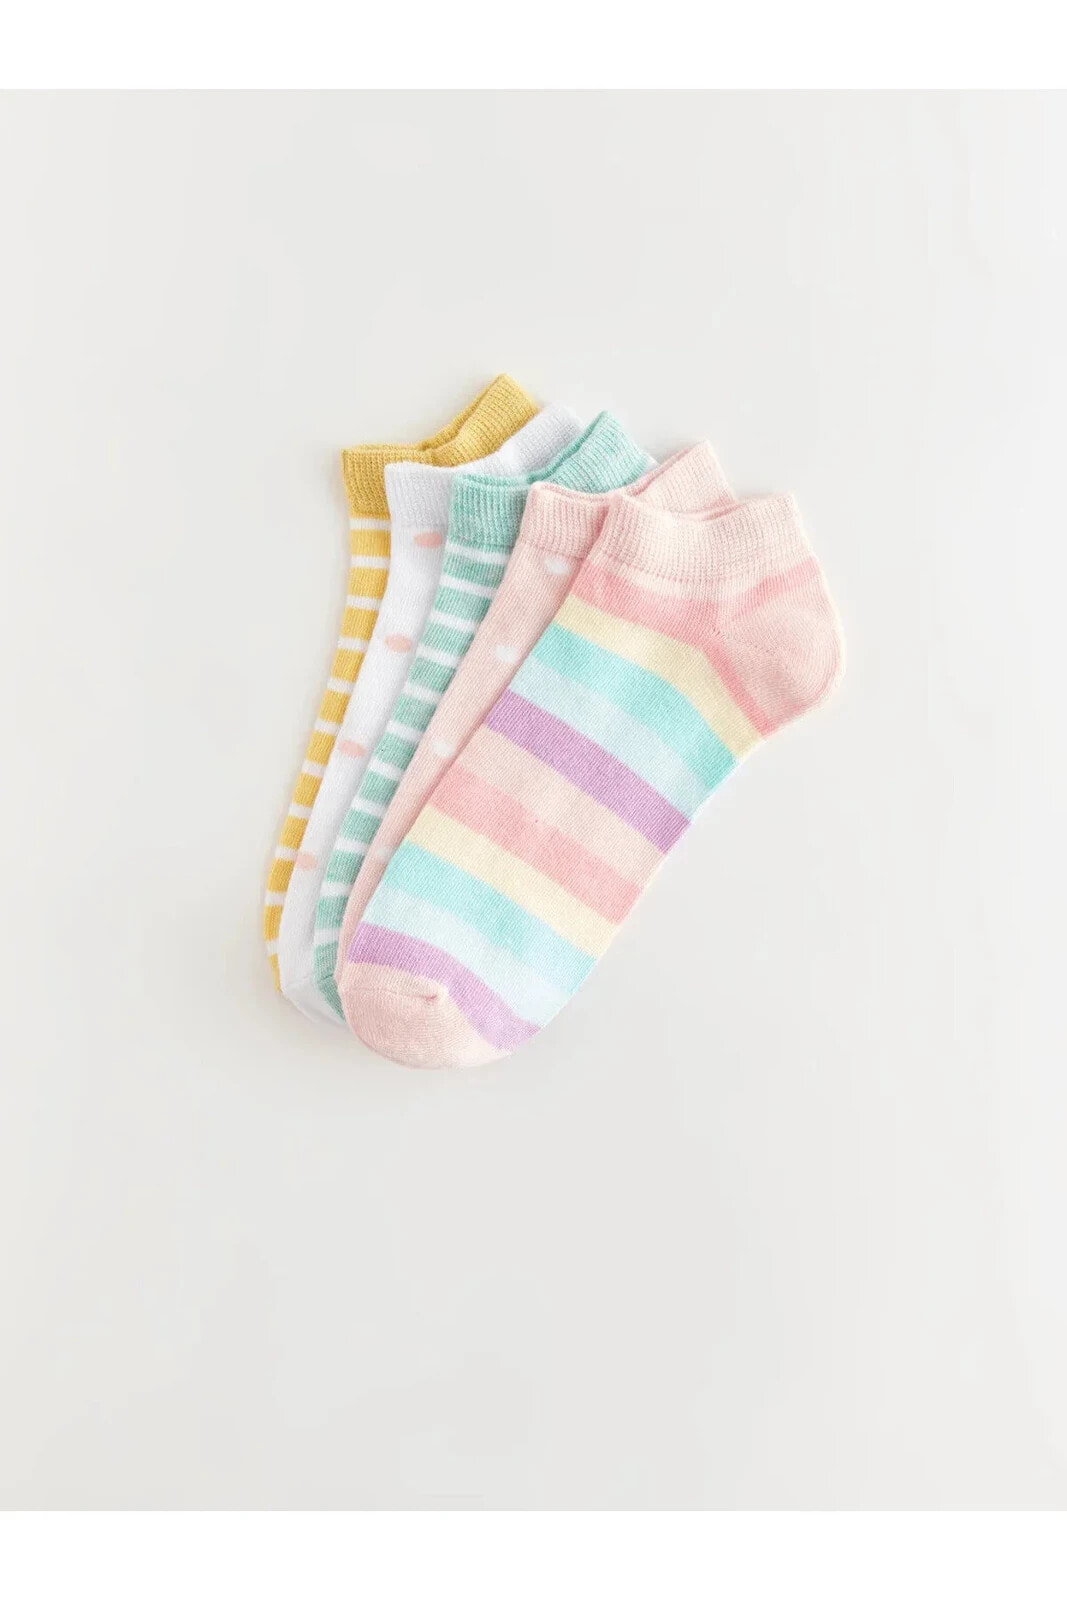 Pamuk karışımlı Esnek kumaştan Kız Çocuk Patik Çorap 5'li